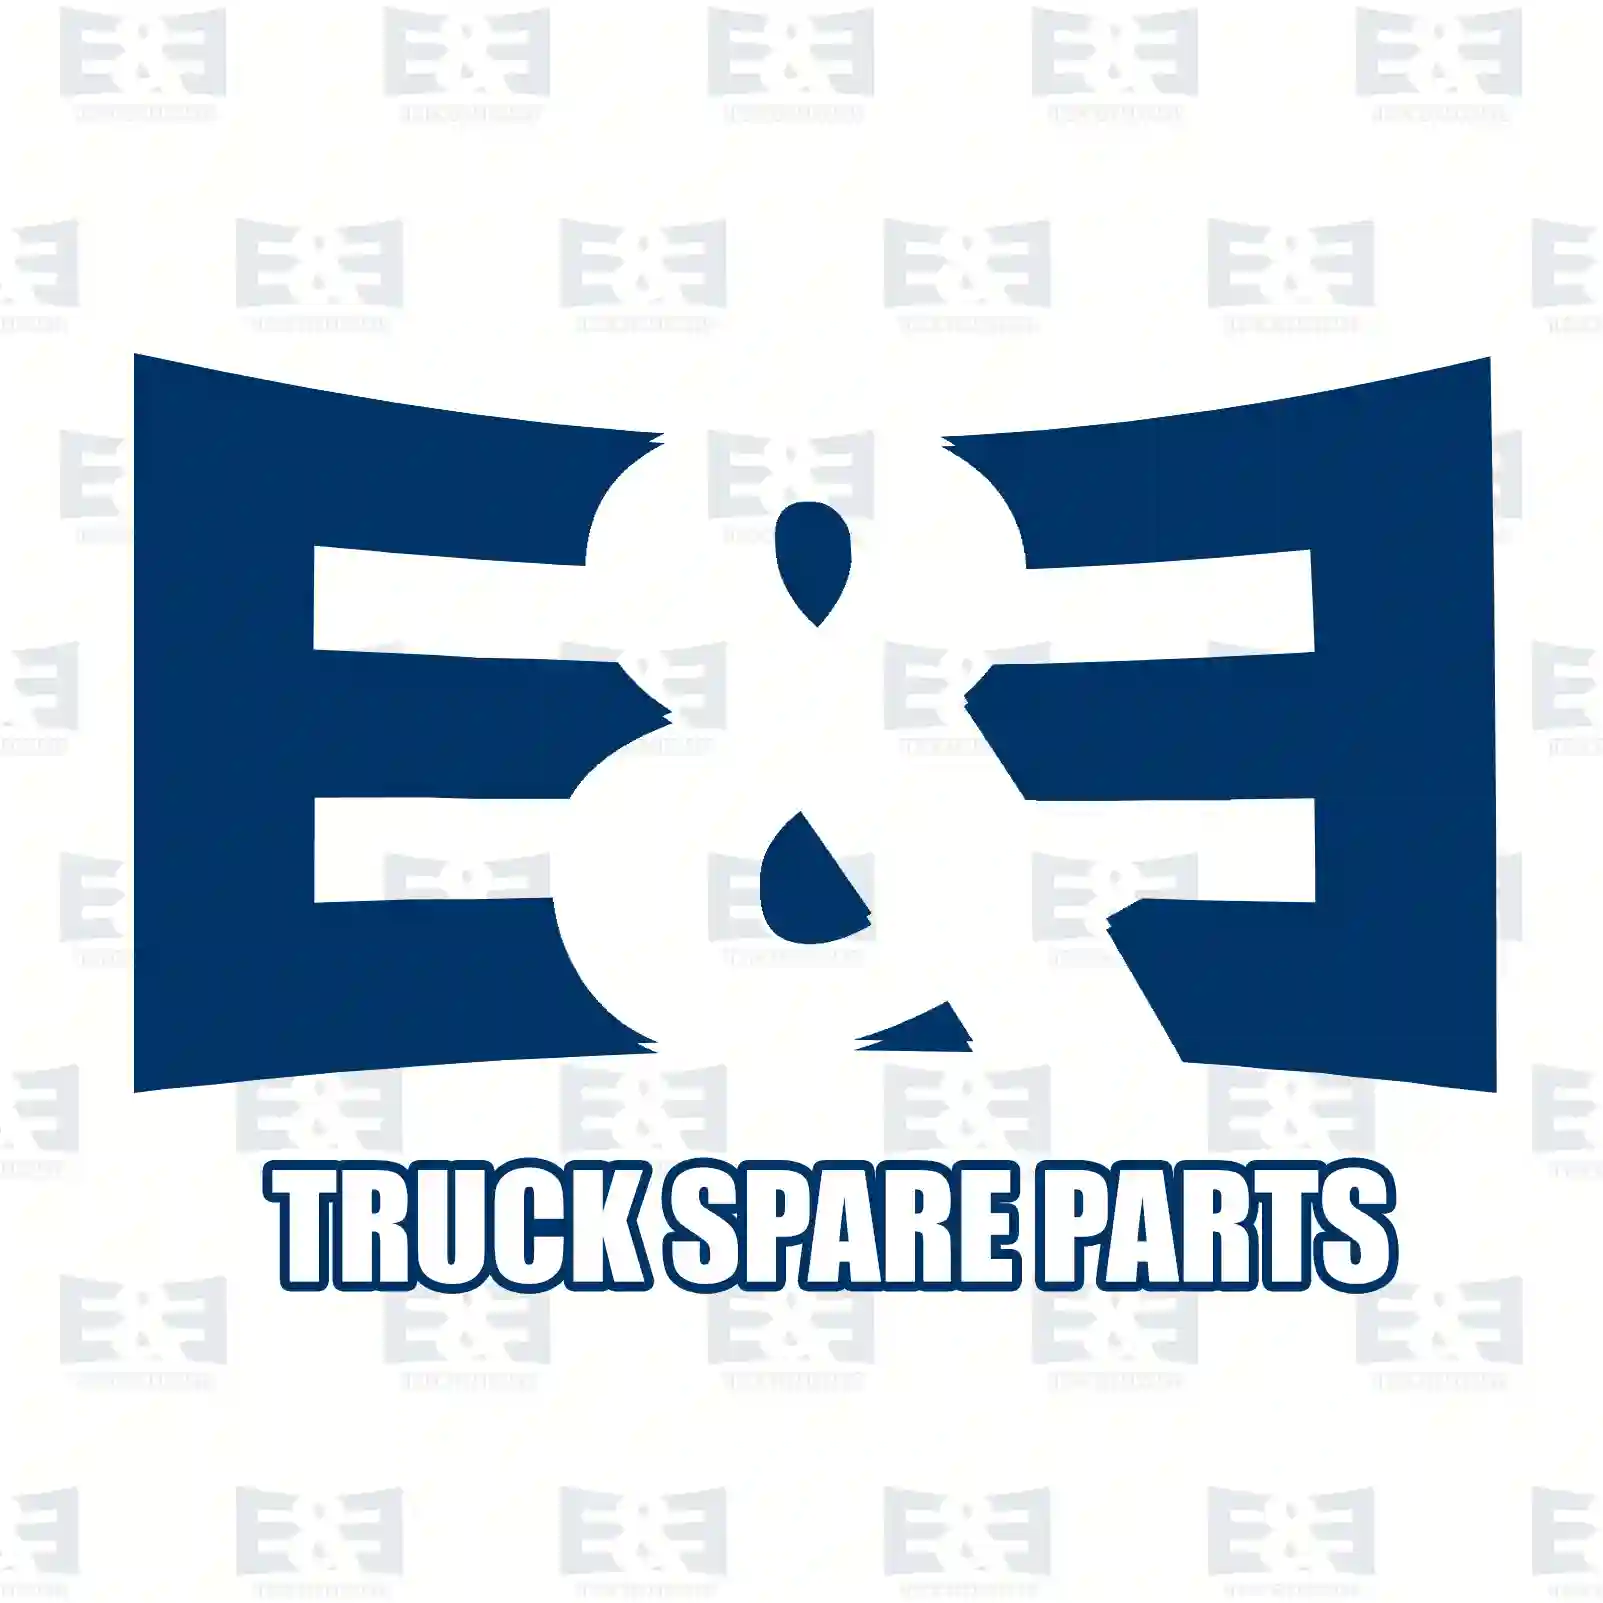 Level valve, 2E2275795, 21304773 ||  2E2275795 E&E Truck Spare Parts | Truck Spare Parts, Auotomotive Spare Parts Level valve, 2E2275795, 21304773 ||  2E2275795 E&E Truck Spare Parts | Truck Spare Parts, Auotomotive Spare Parts